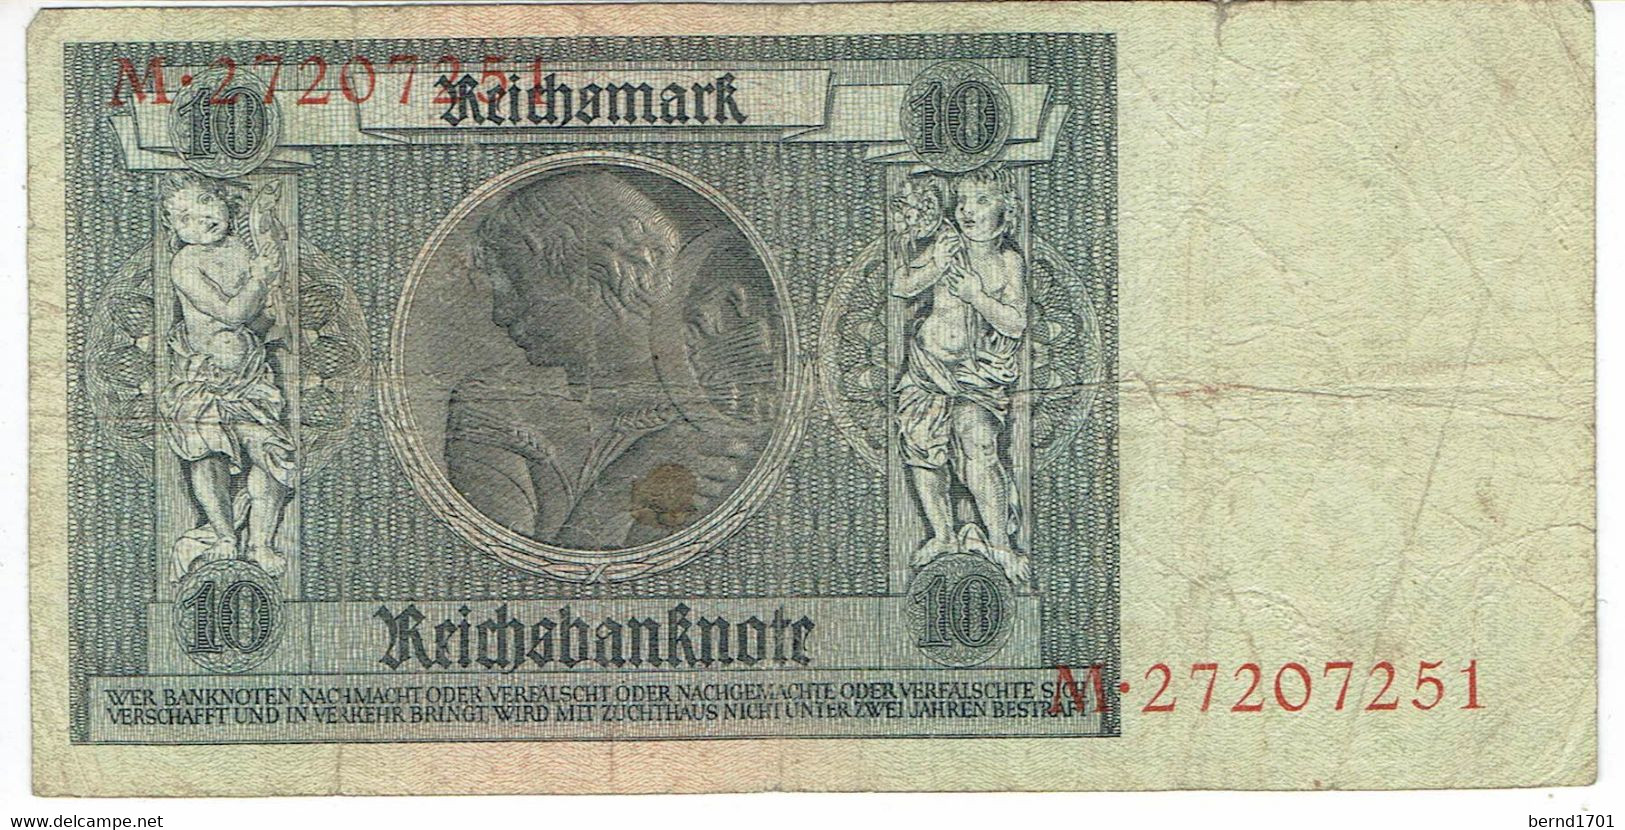 Deutsches Reich - 10 Mark # 22.01.1929 - Gebraucht / Used (h557) - 10 Mark